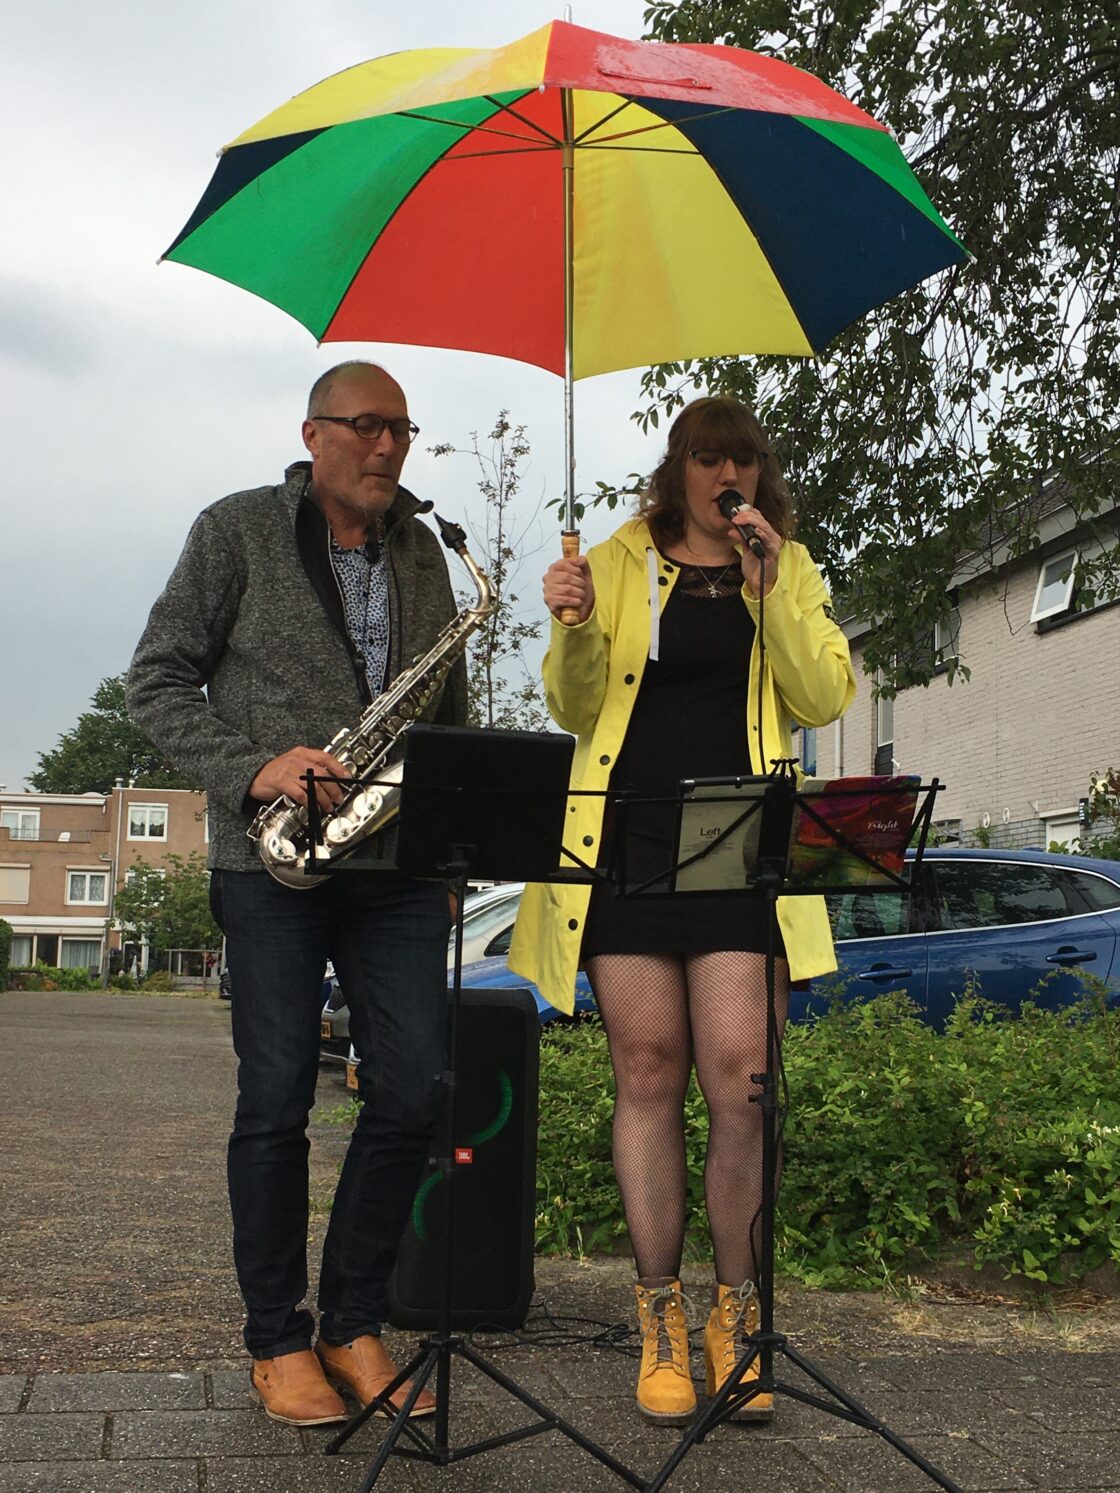 saxofonist en zangeres onder paraplu op straat